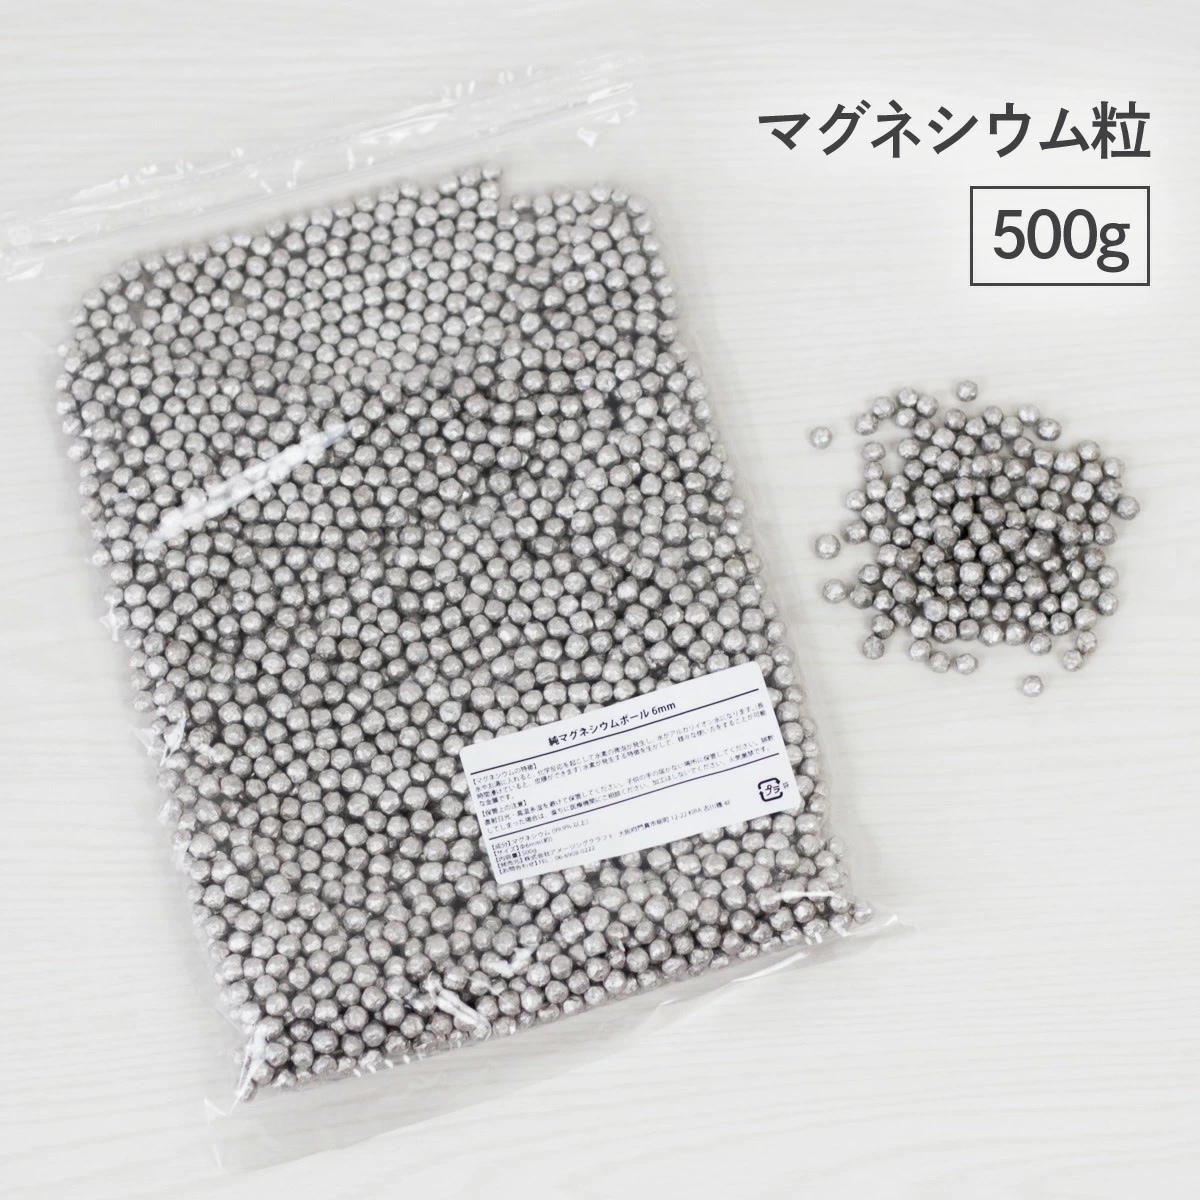 品質保証 マグネシウム粒 6mmサイズ 600g×3袋 純度99.95% gnu2.com